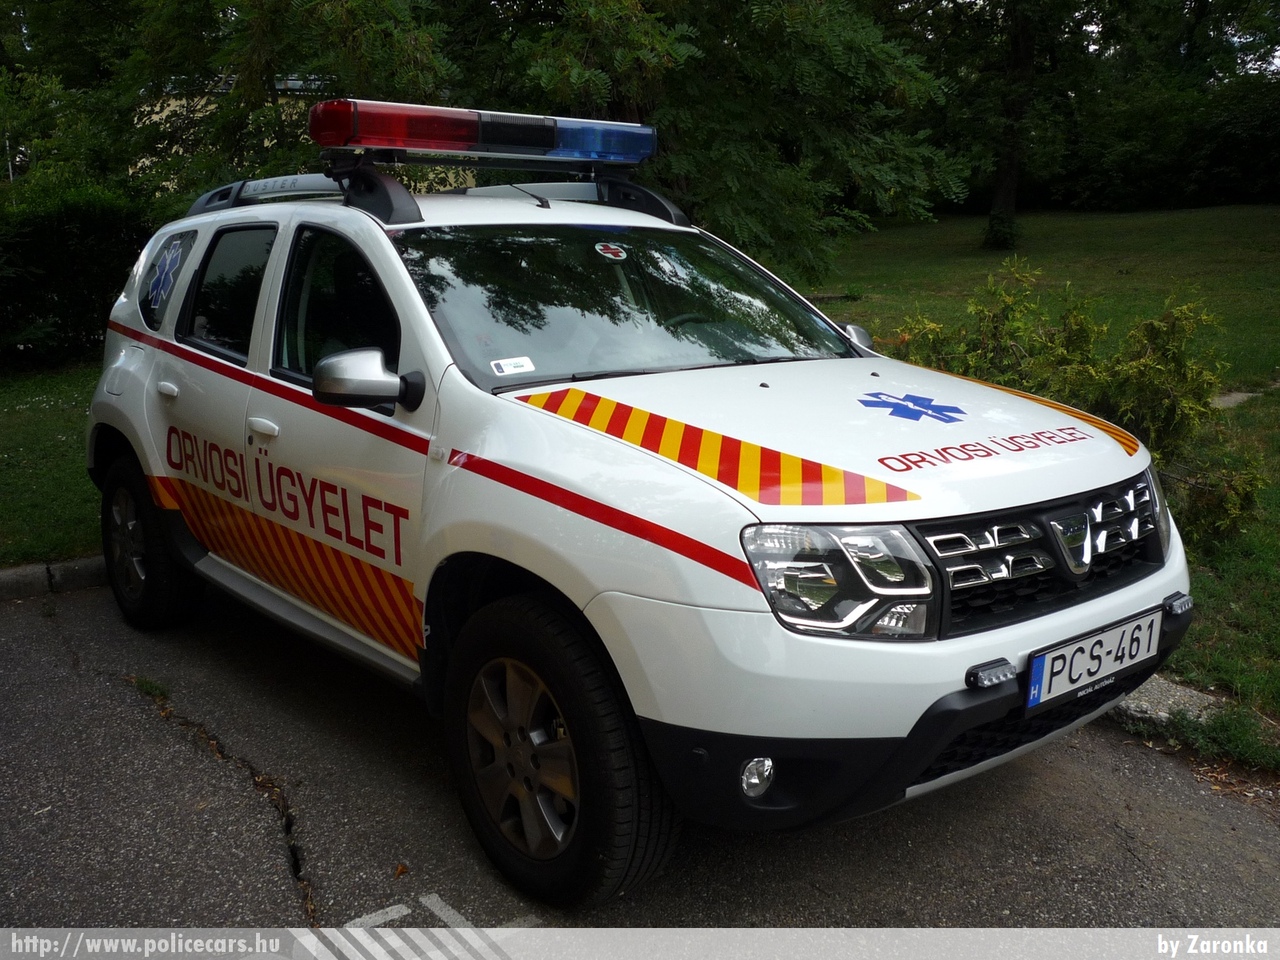 Dacia Duster, Sopron, orvosi ügyelet, fotó: Zaronka
Keywords: magyar Magyarország mentő mentőautó Hungary hungarian ambulance PCS-461